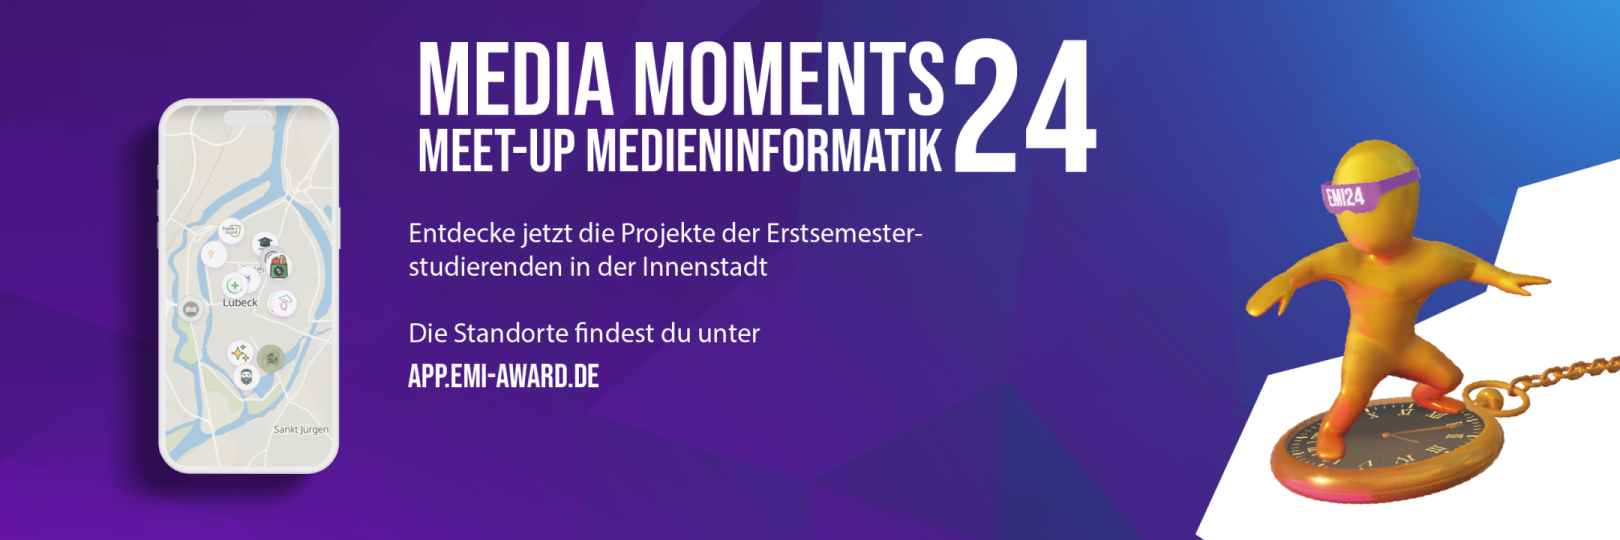 Die Media Moments 24 sind ab sofort in der Lübeck Innenstadt explorierbar